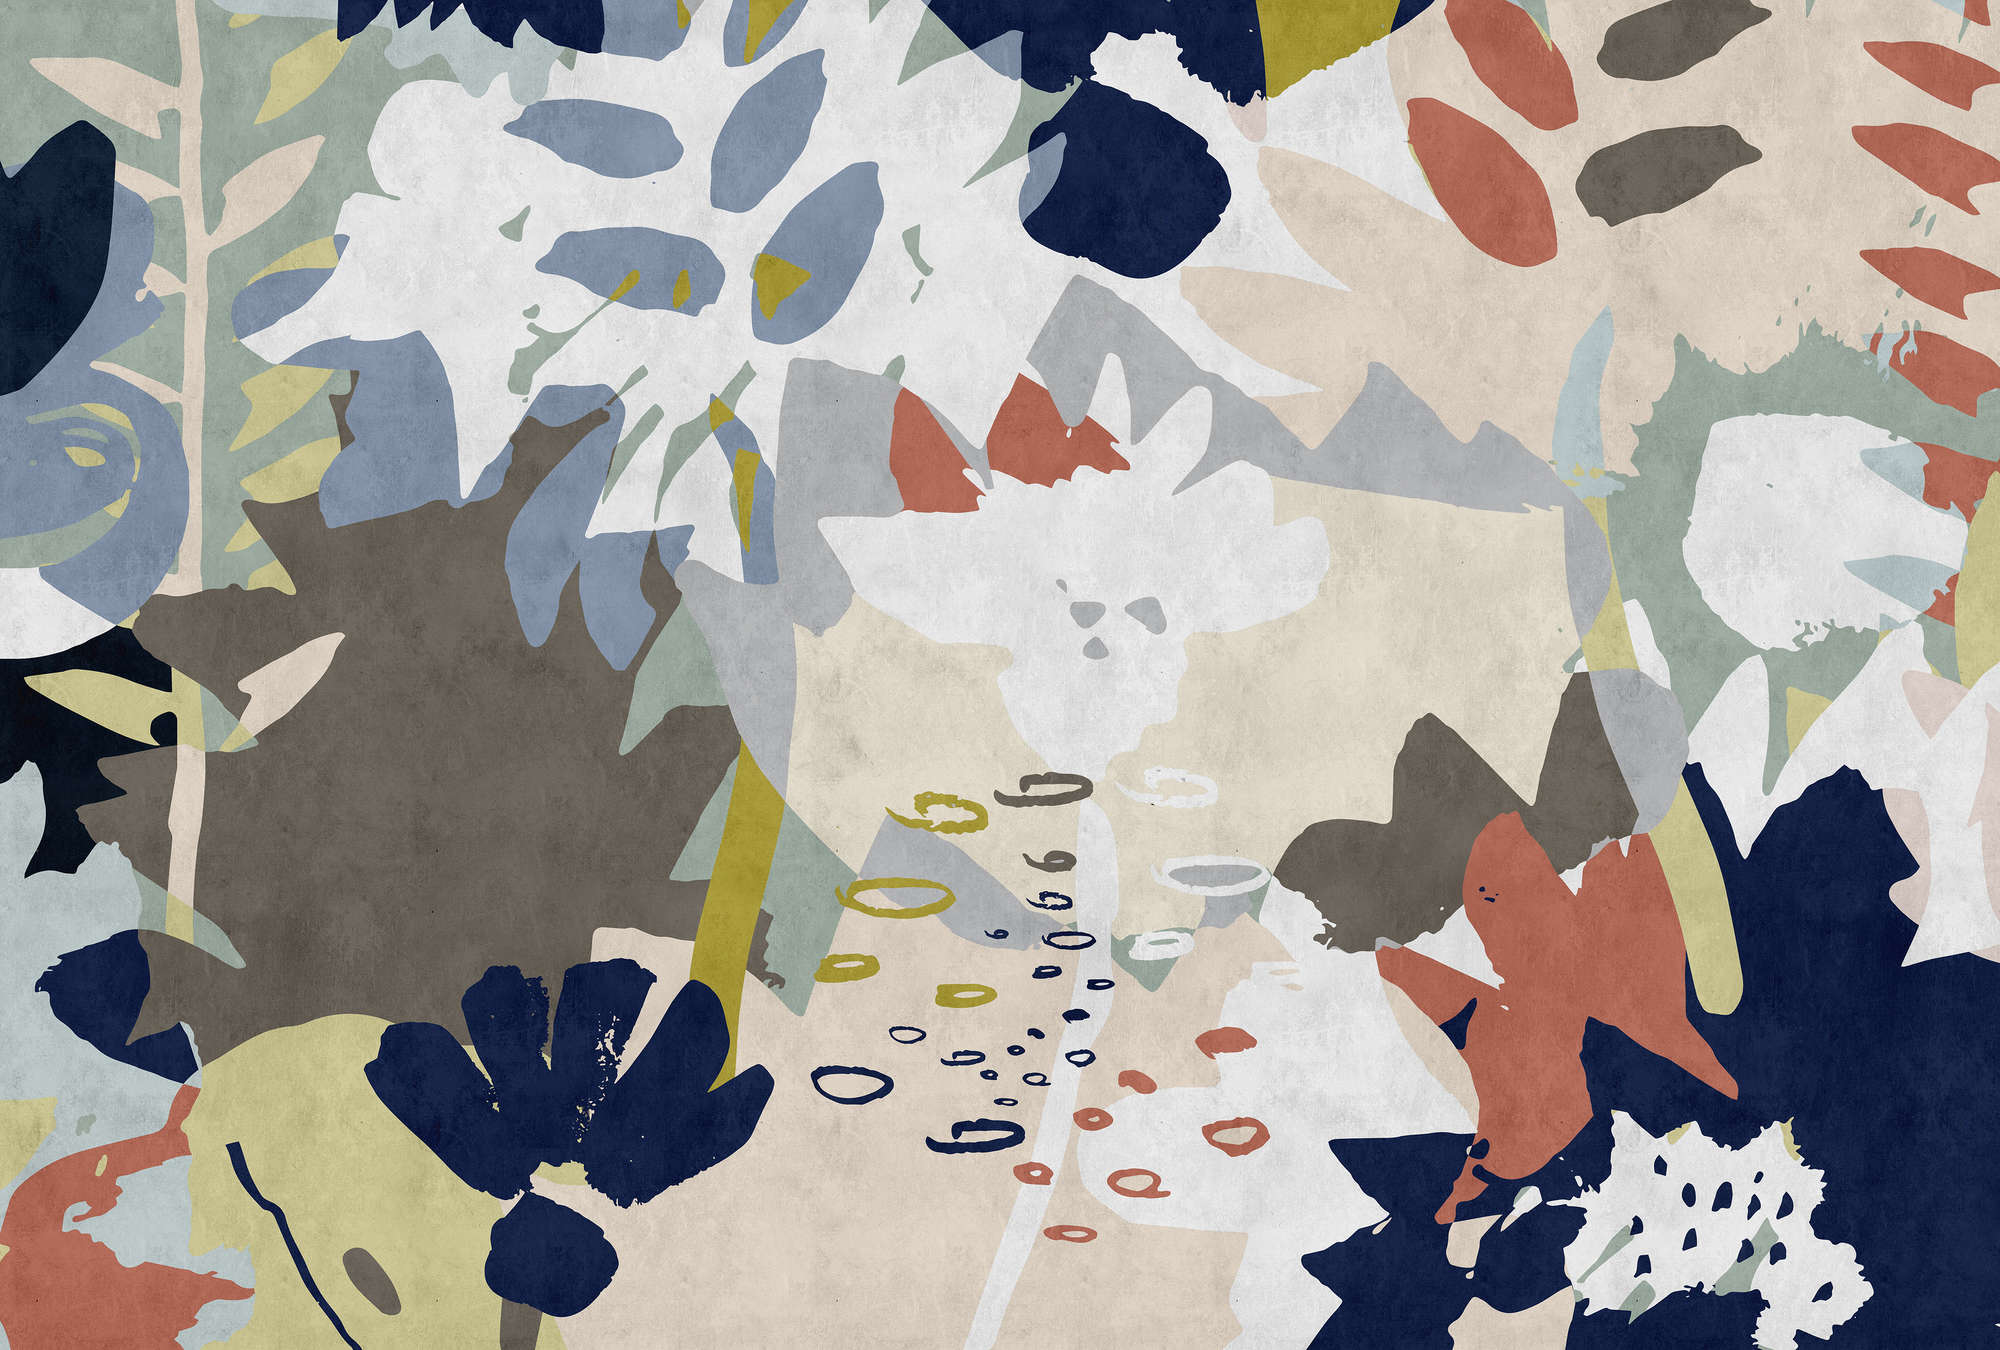             Floral Collage 4 - Fotomurali con motivo a foglie colorate - Natura qualita consistenza in carta assorbente - Blu, Marrone | Natura qualita consistenza in tessuto non tessuto
        